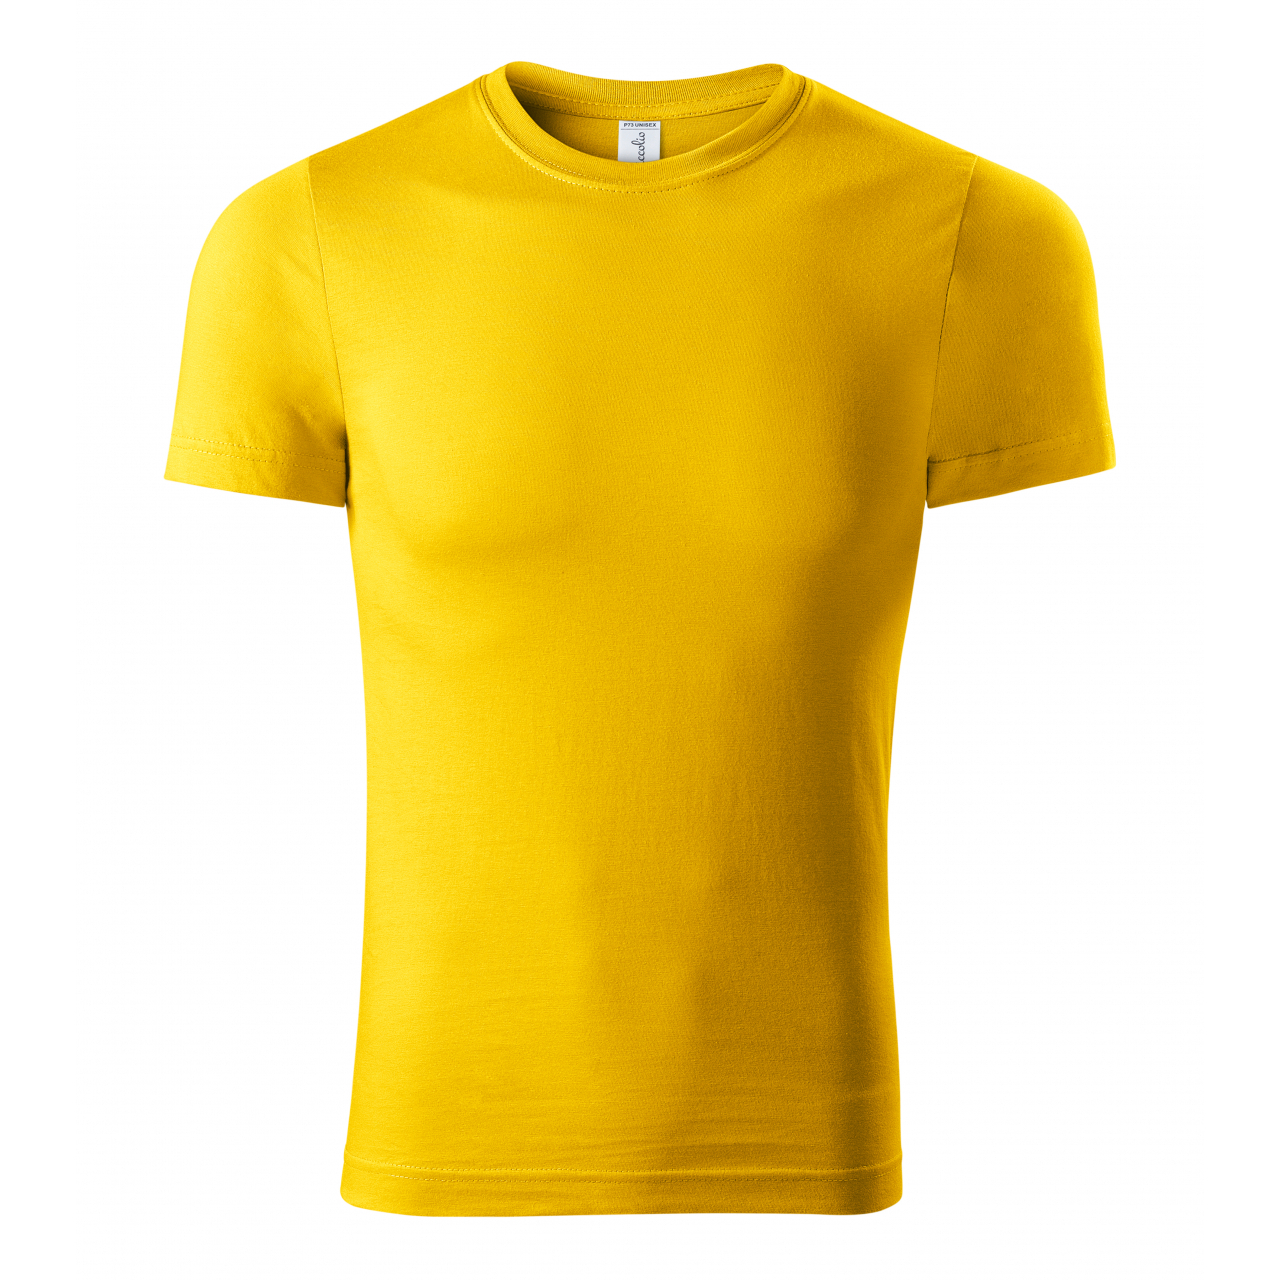 Tričko unisex Piccolio Paint - žluté, L